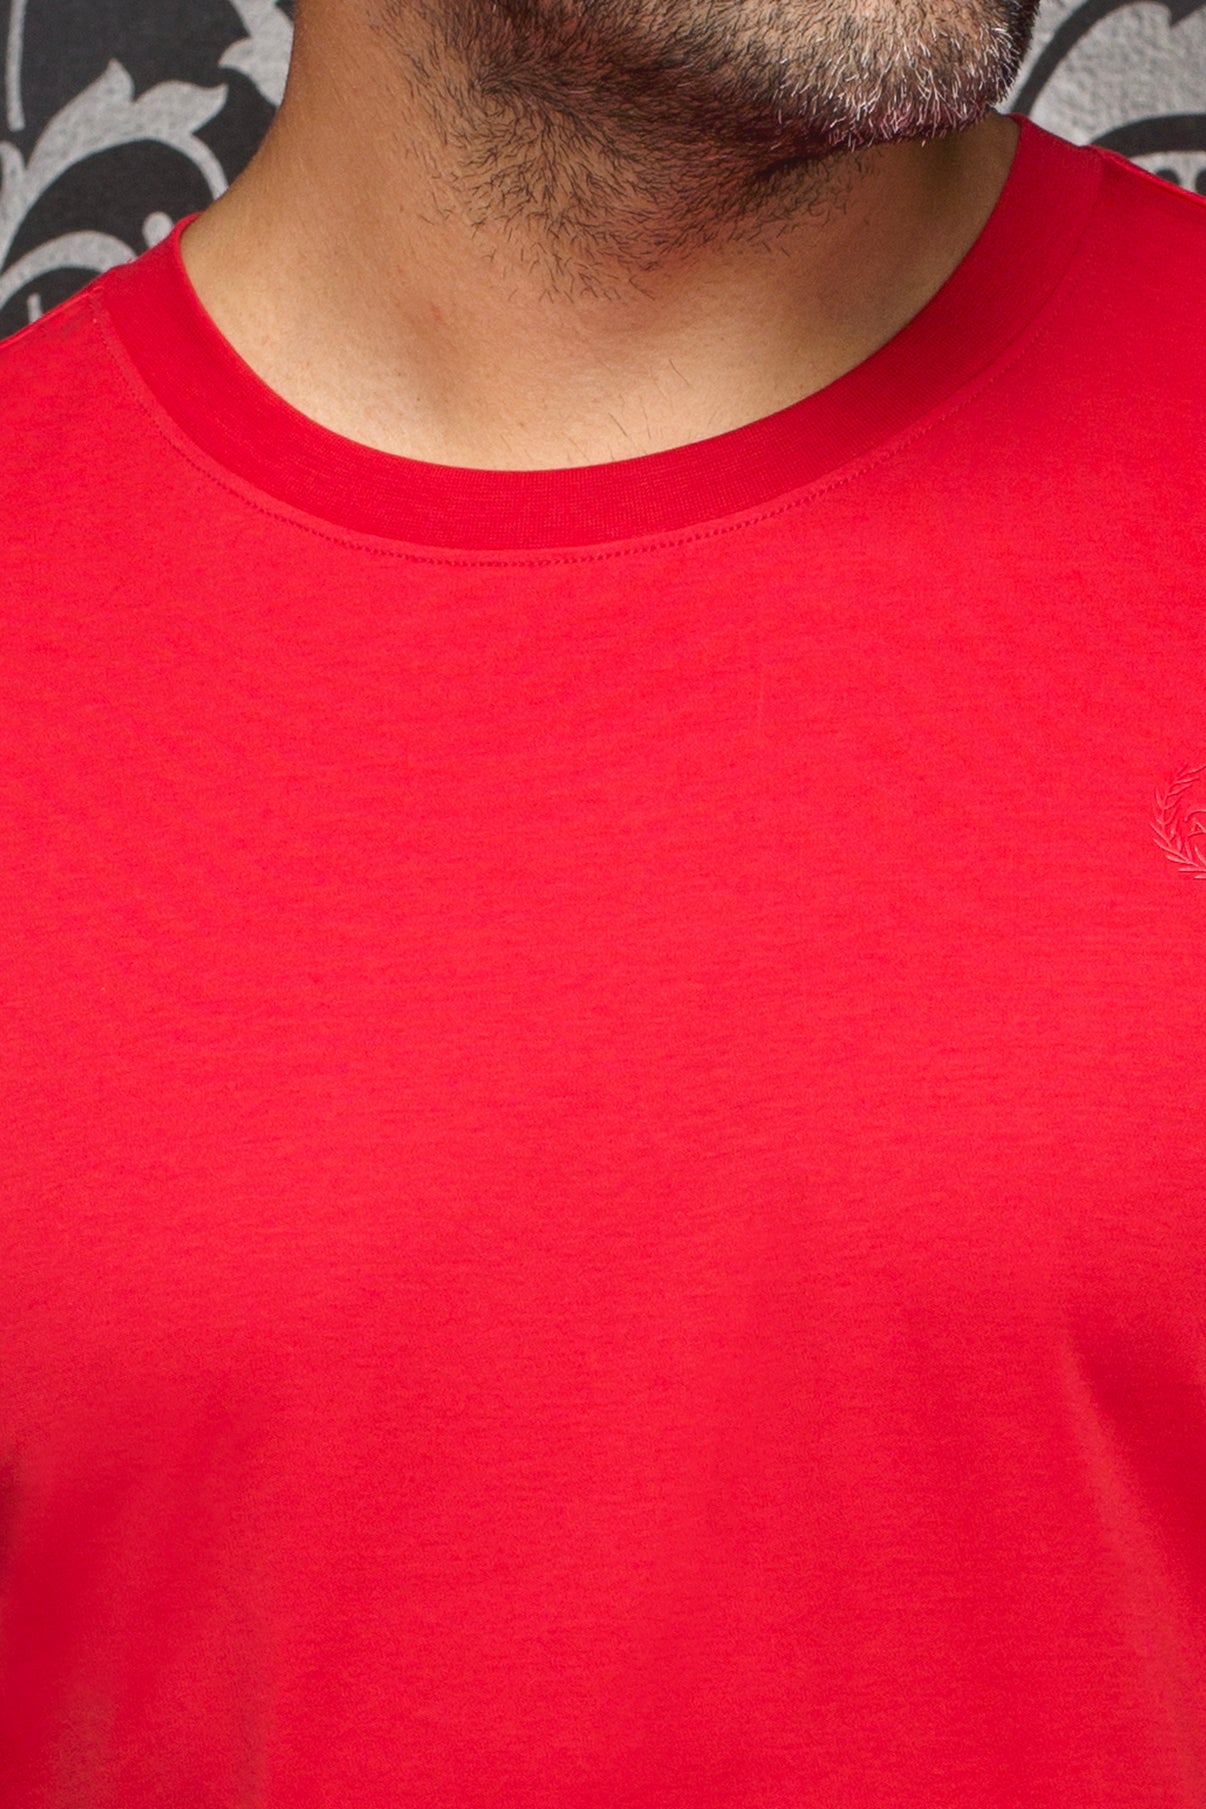 Camiseta | MICHAEL-C, roja